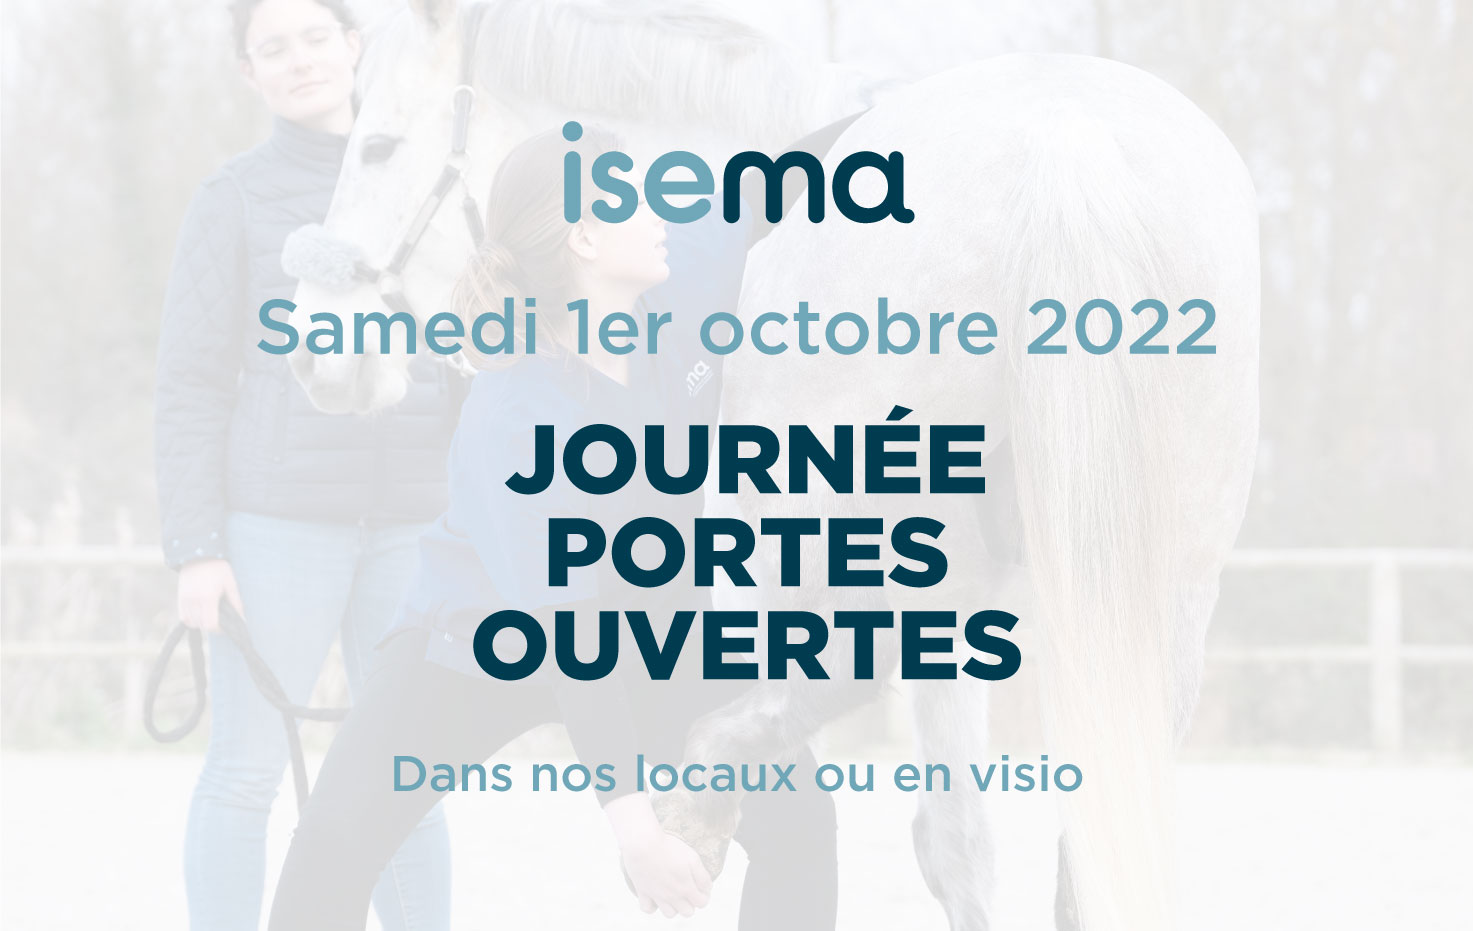 Journee-portes-ouvertes-ISEMA-Bordeaux-1er-octobre-2022